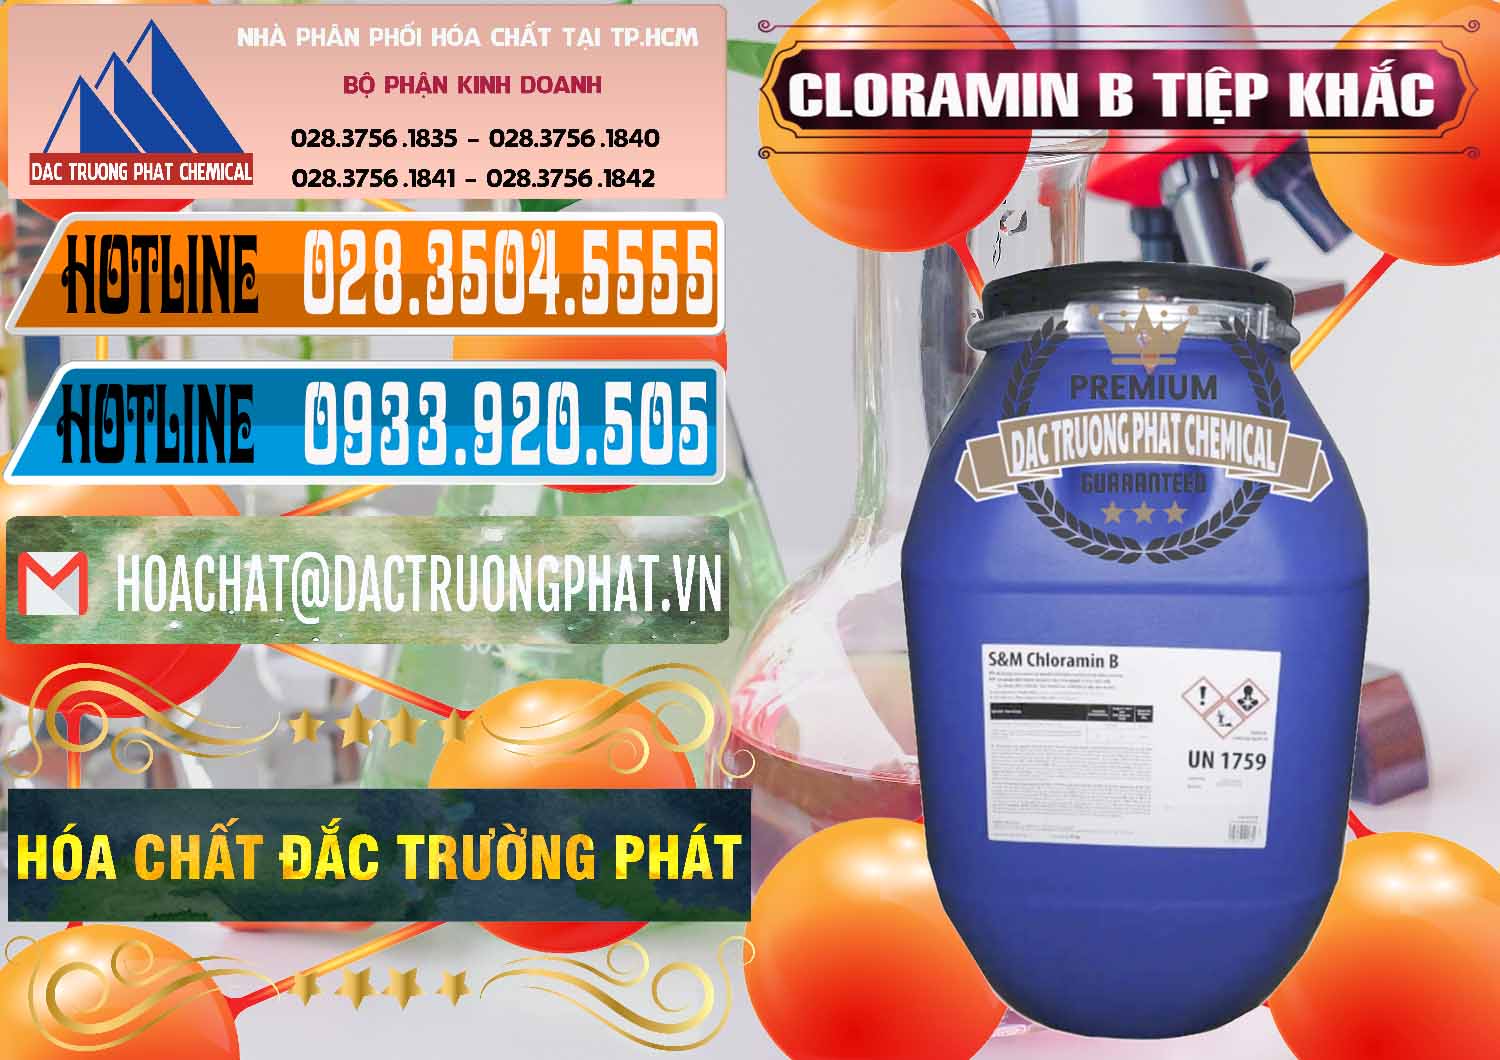 Cty chuyên cung ứng & bán Cloramin B Cộng Hòa Séc Tiệp Khắc Czech Republic - 0299 - Nhà phân phối & nhập khẩu hóa chất tại TP.HCM - stmp.net